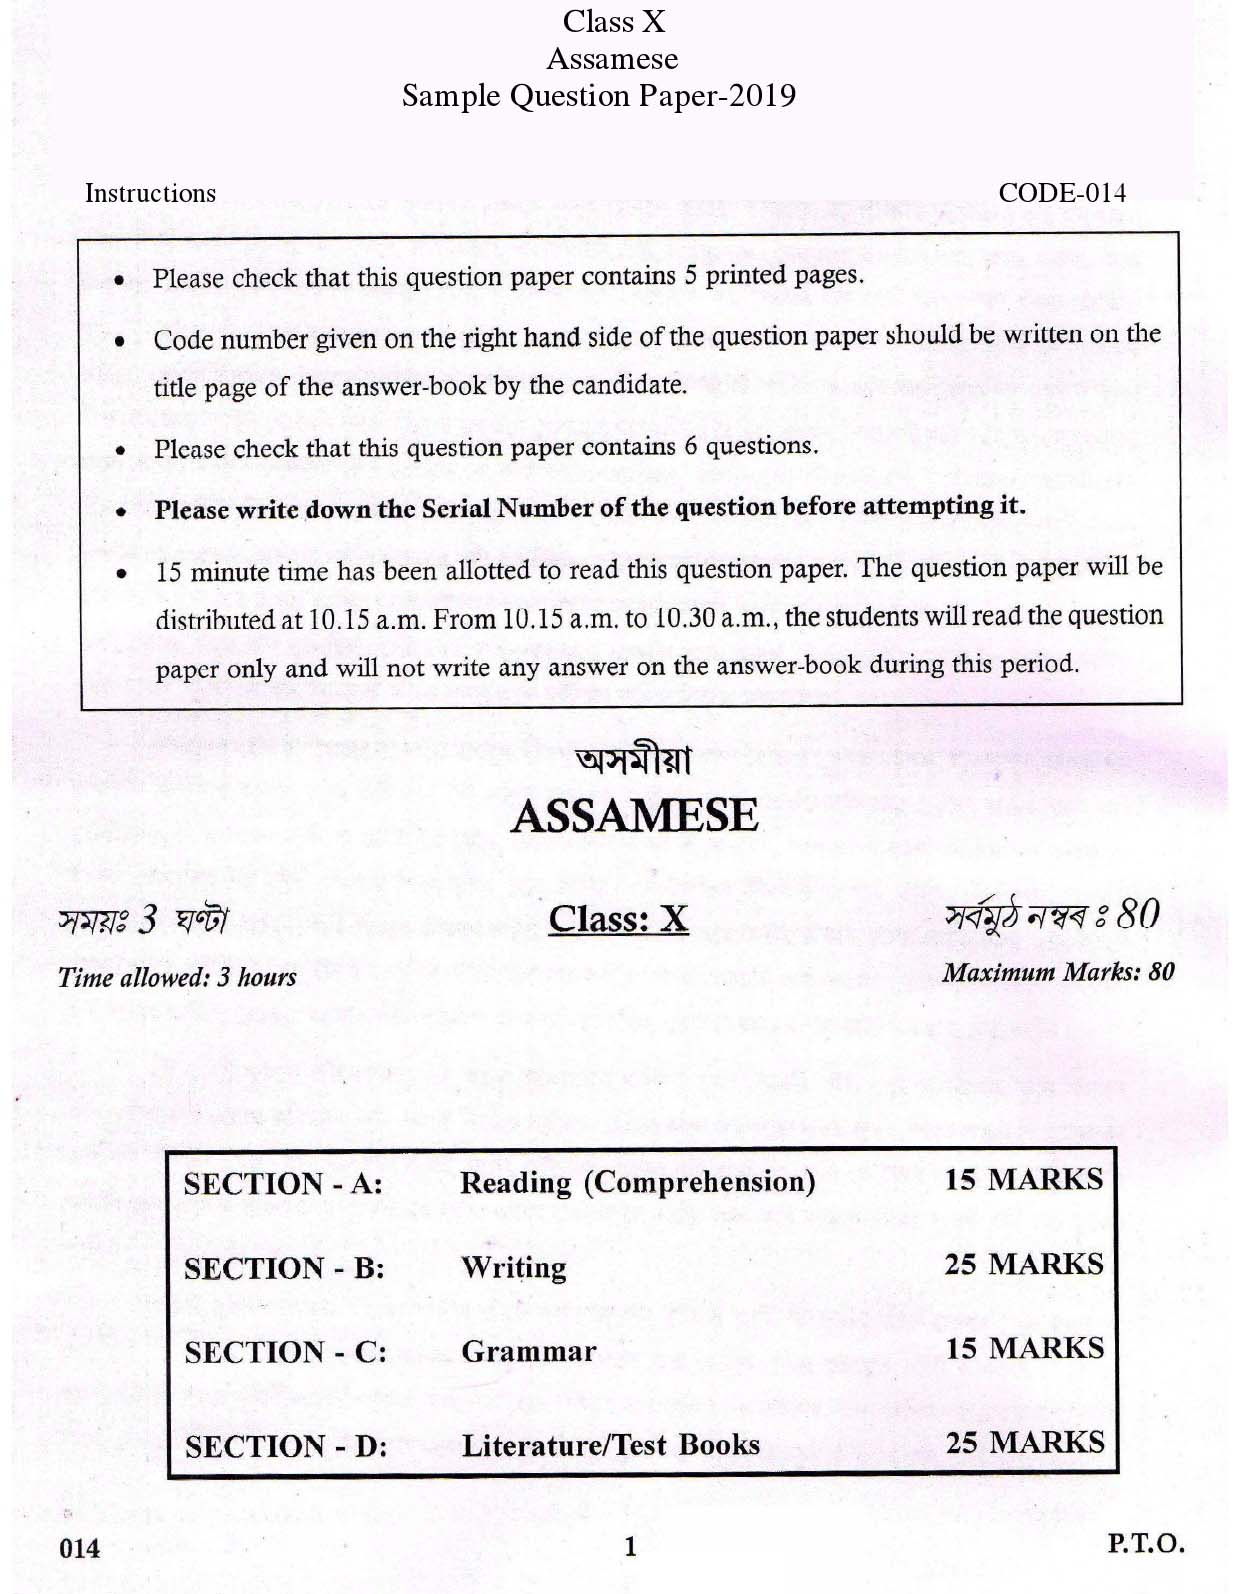 Assamese CBSE Class X Sample Question Paper 2018-19 - Image 1